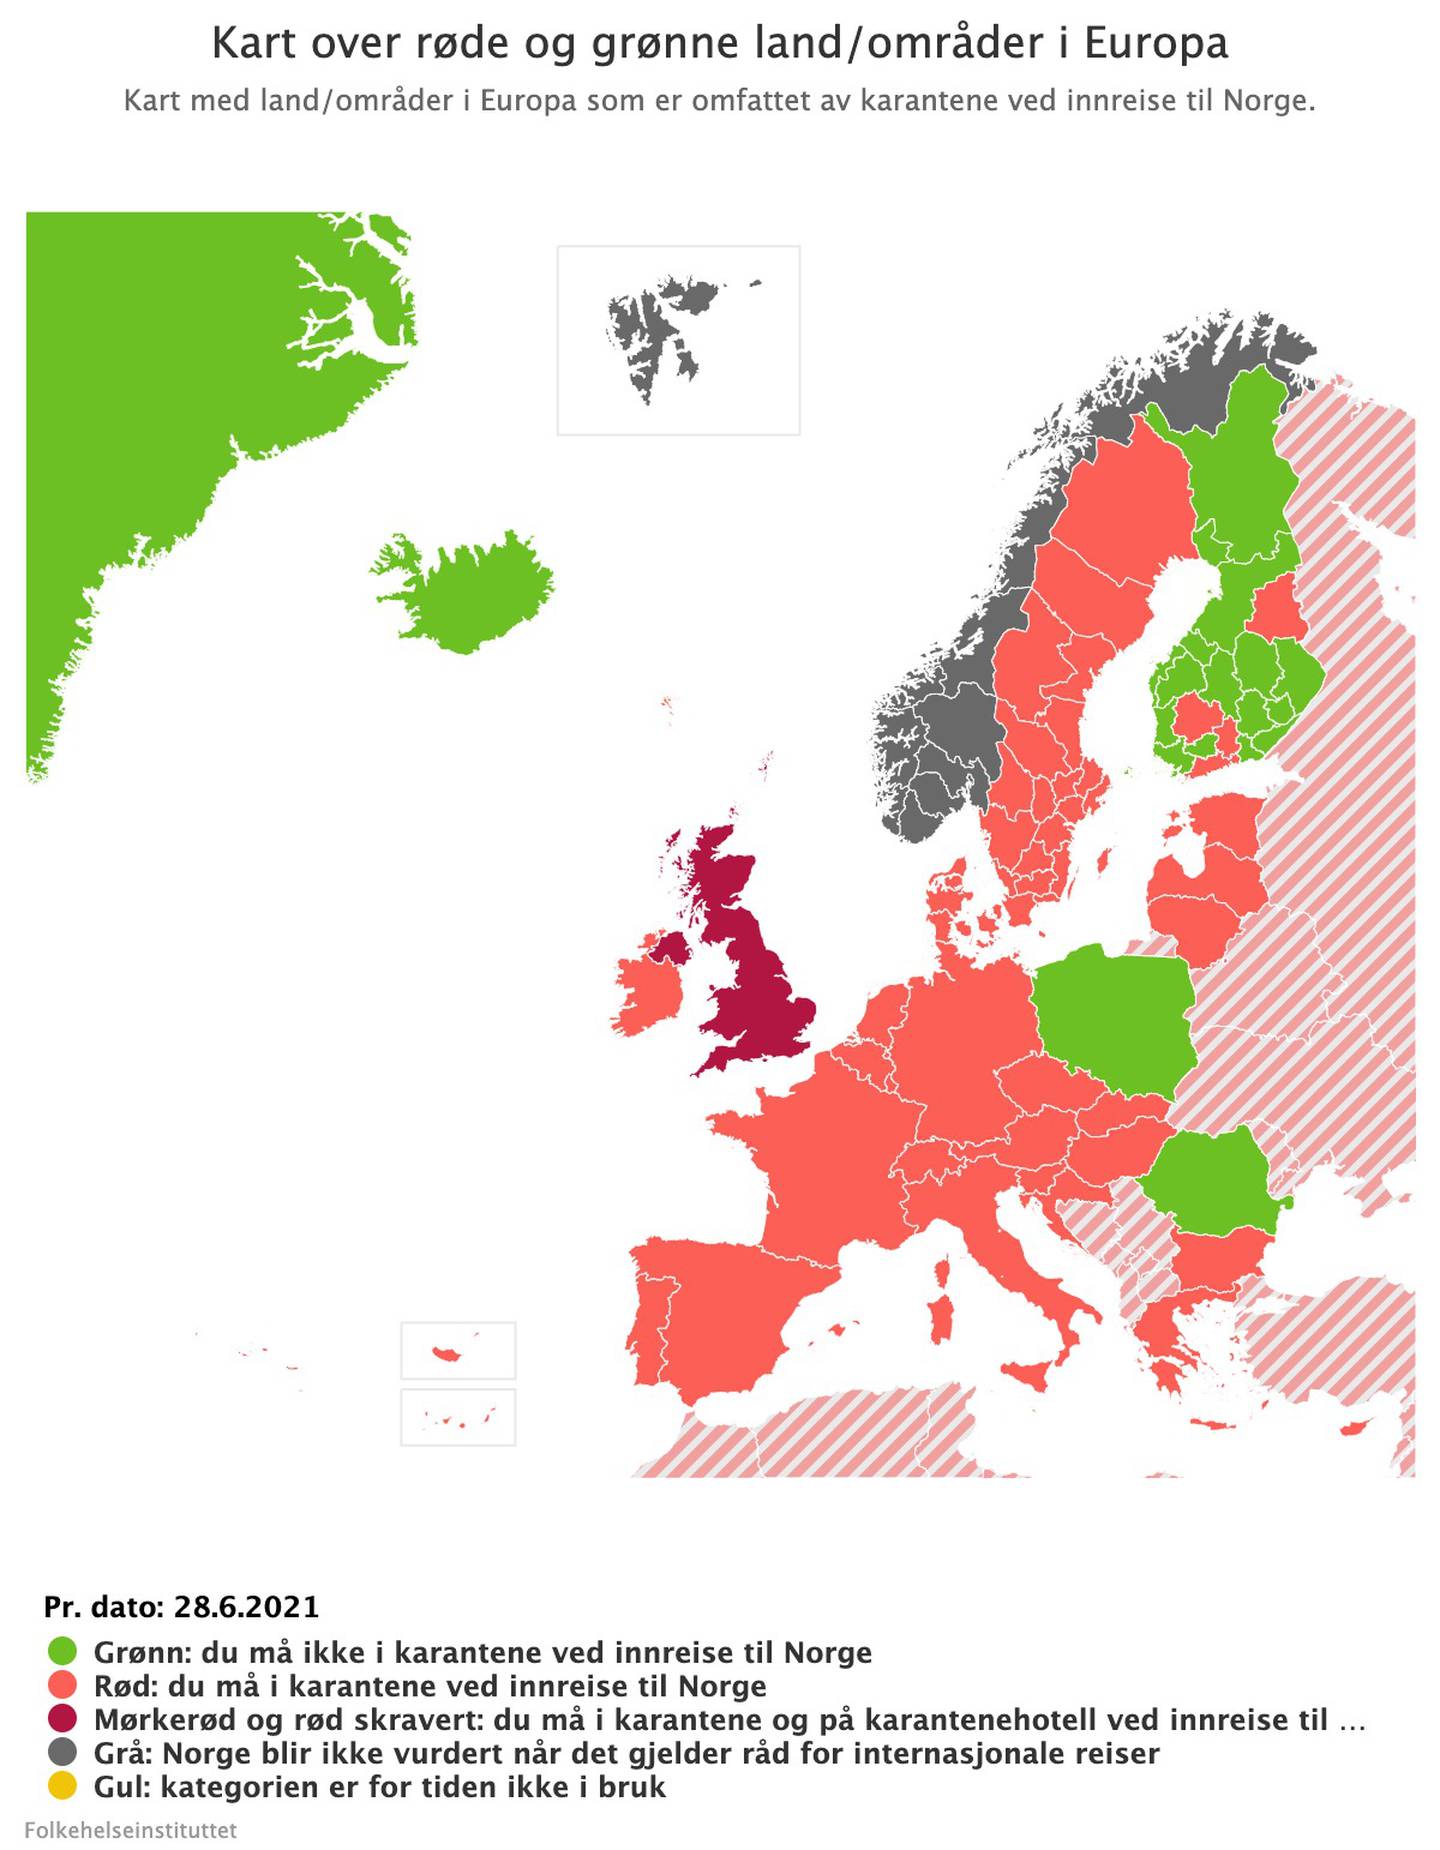 Bildet er et kart av Europa. Nesten alle landene er farget røde. Unntakene er Grønland, Island, Polen, Romania og deler av Finland. De er grønne